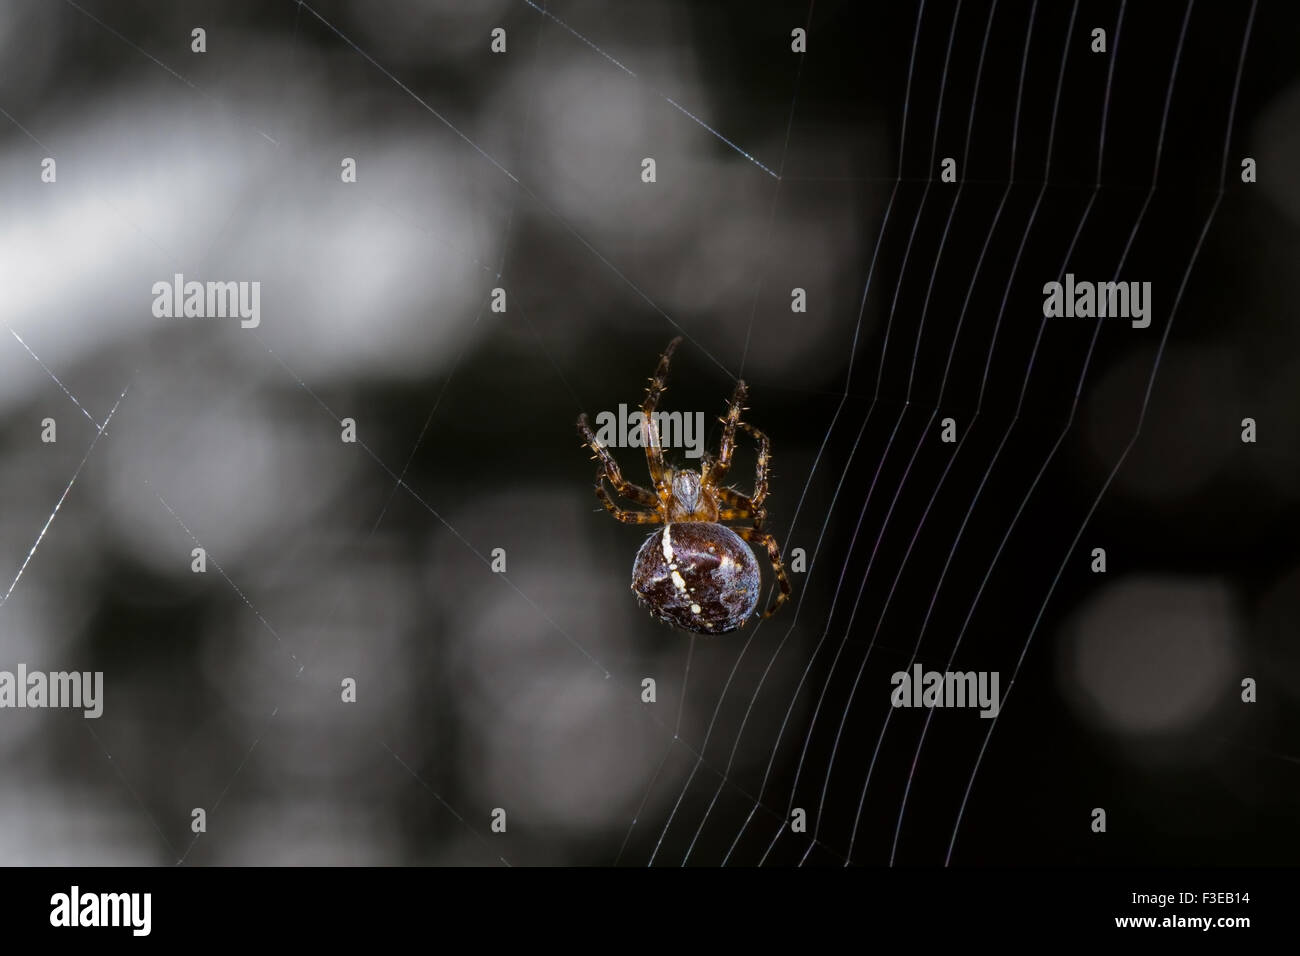 Europäische Gartenkreuzspinne (Araneus Diadematus, auch bekannt als Diadem Spider, Kreuzspinne oder gekrönte Orb Weaver) Aufbau eines Webs Stockfoto